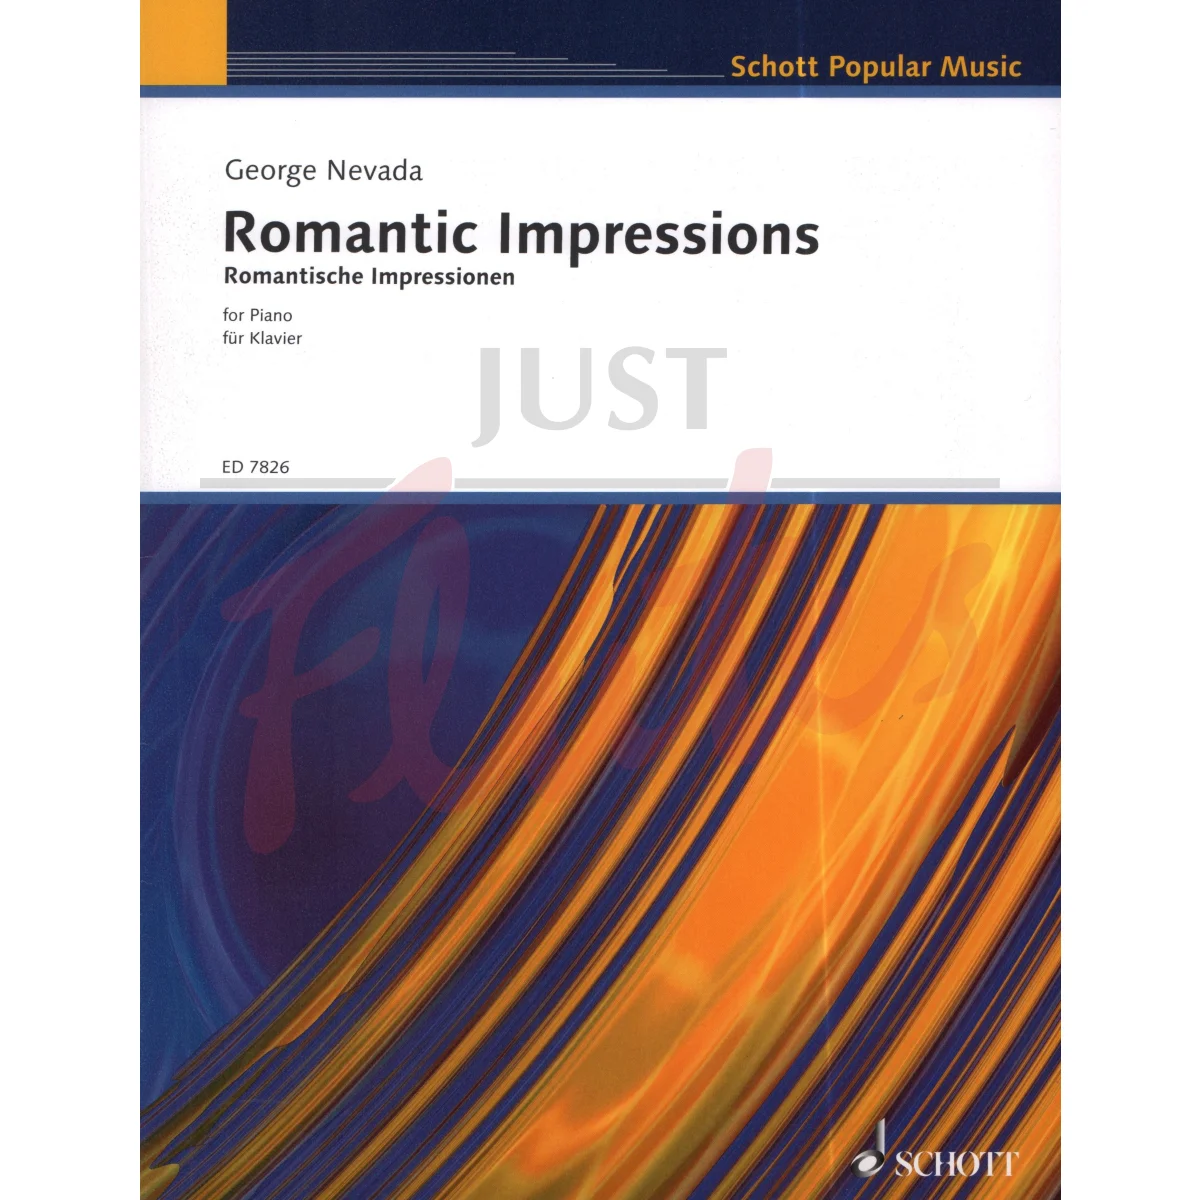 Romantic Impressions for Piano